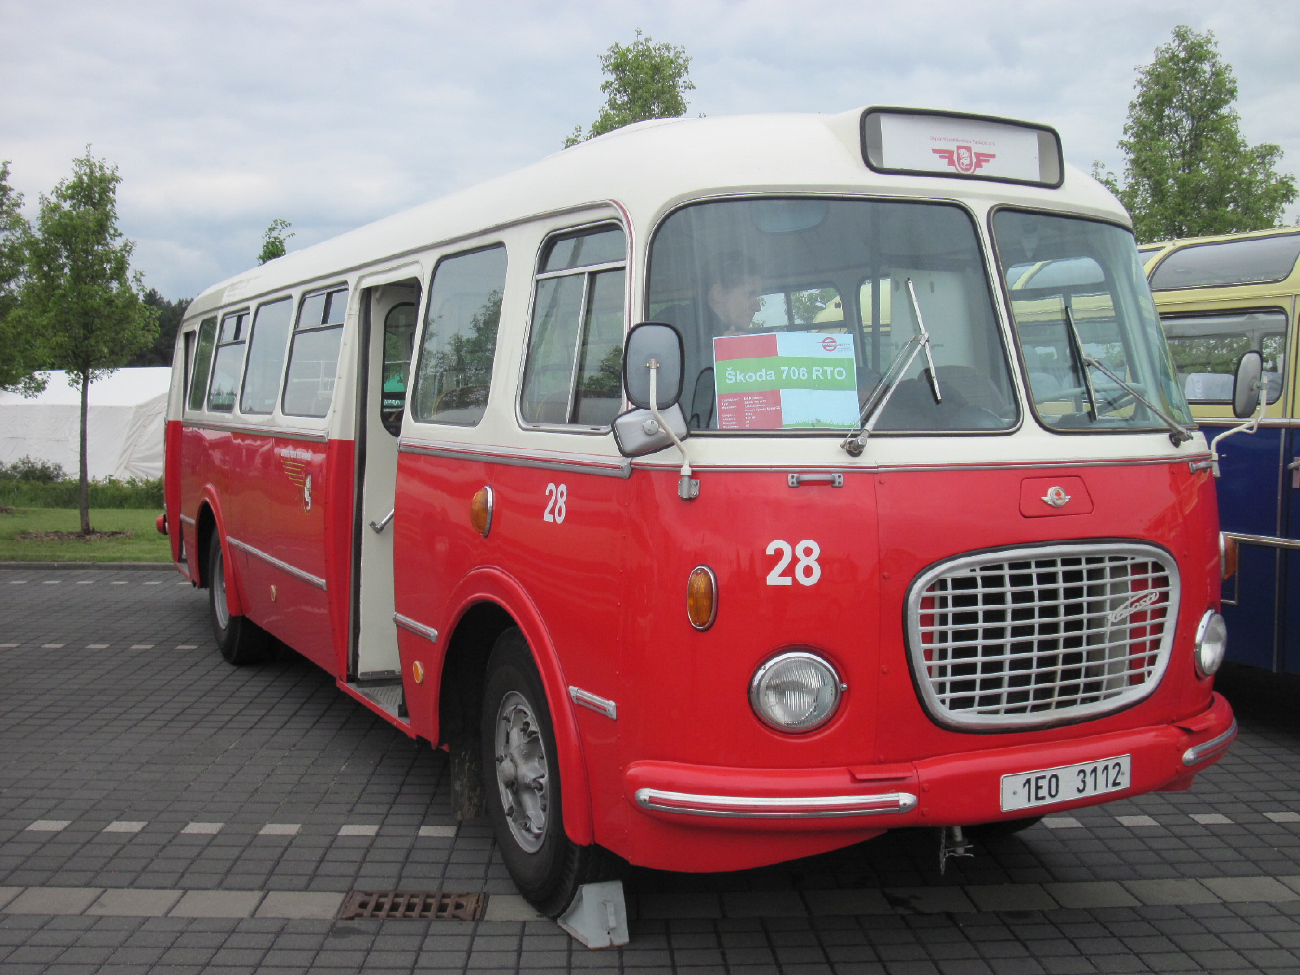 Pardubice, Škoda 706 RTO №: 28